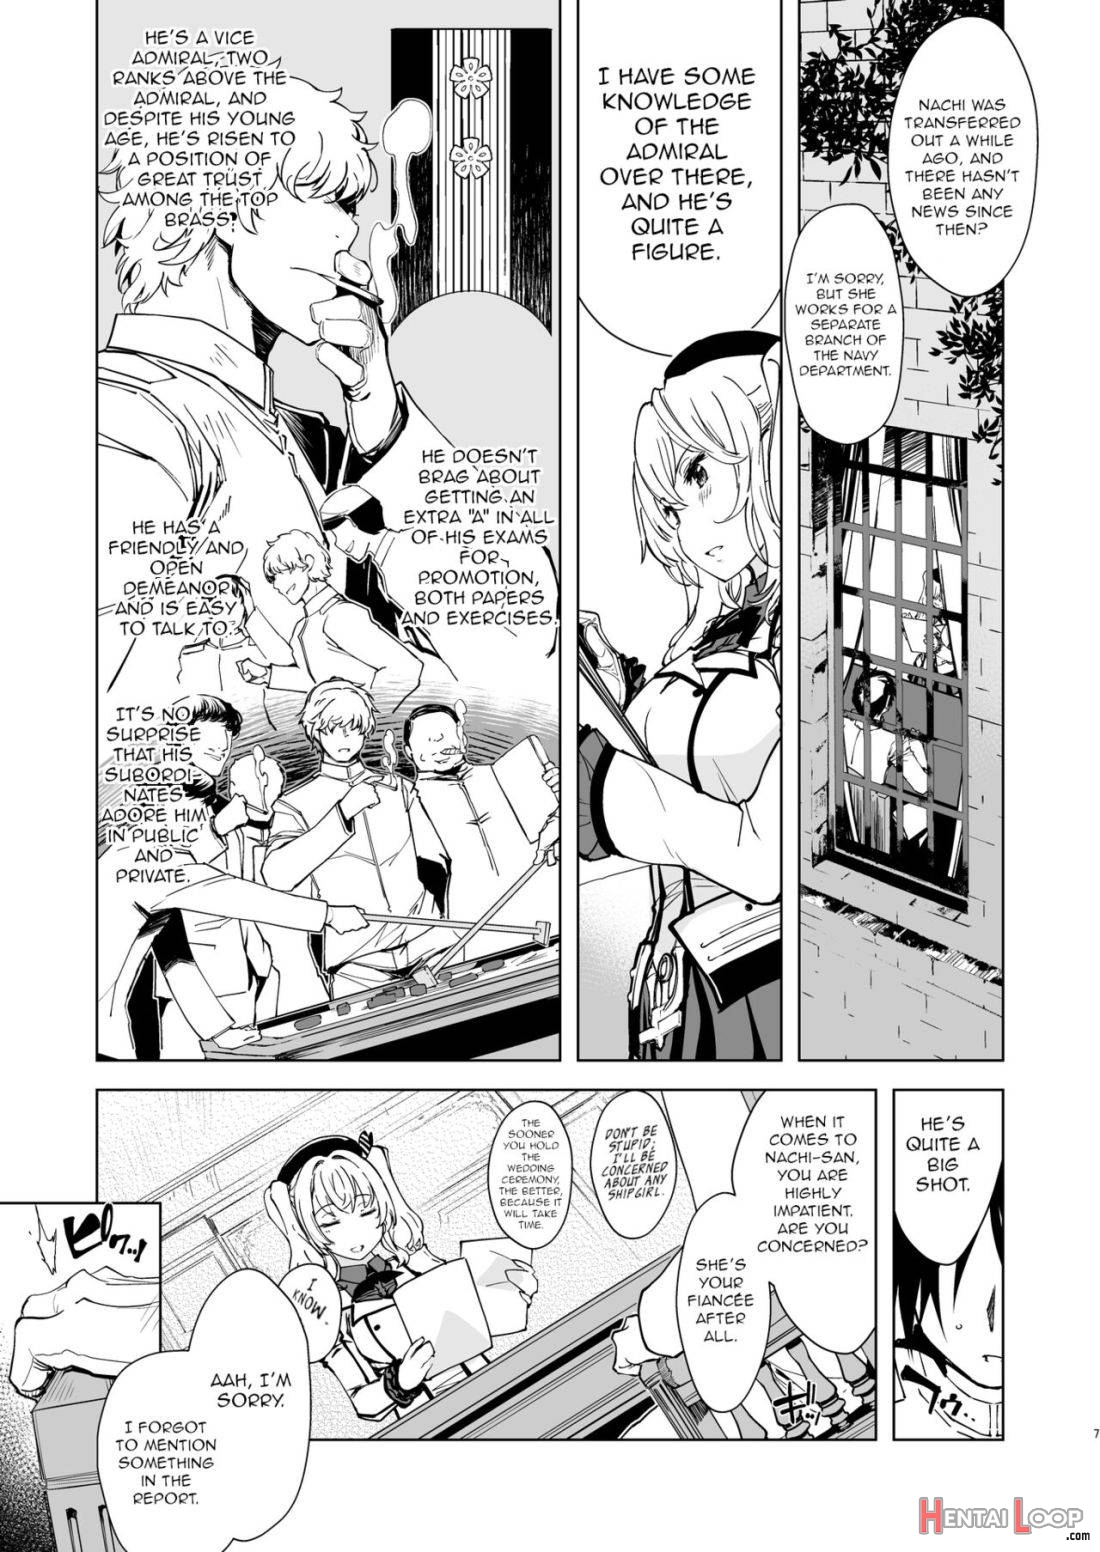 Hishokan Kashima no Houkokusho 3 page 6